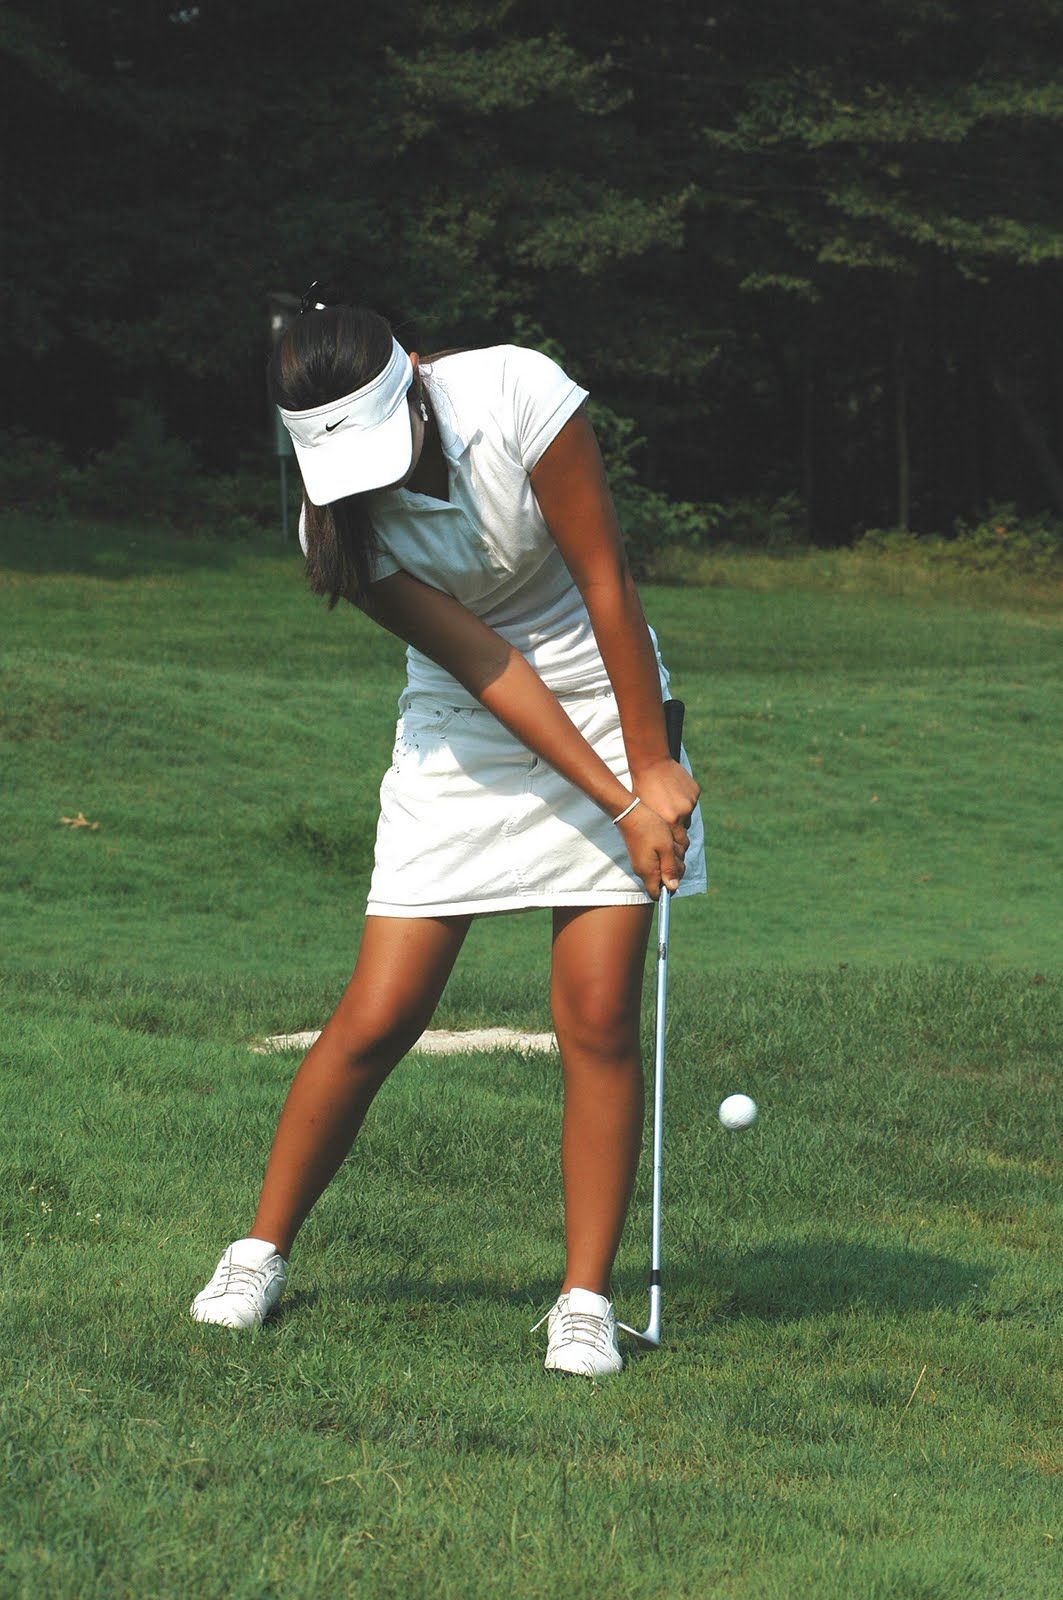 Golf Wallpaper for Women Golfers Image. Golf tips, Golf, Cute